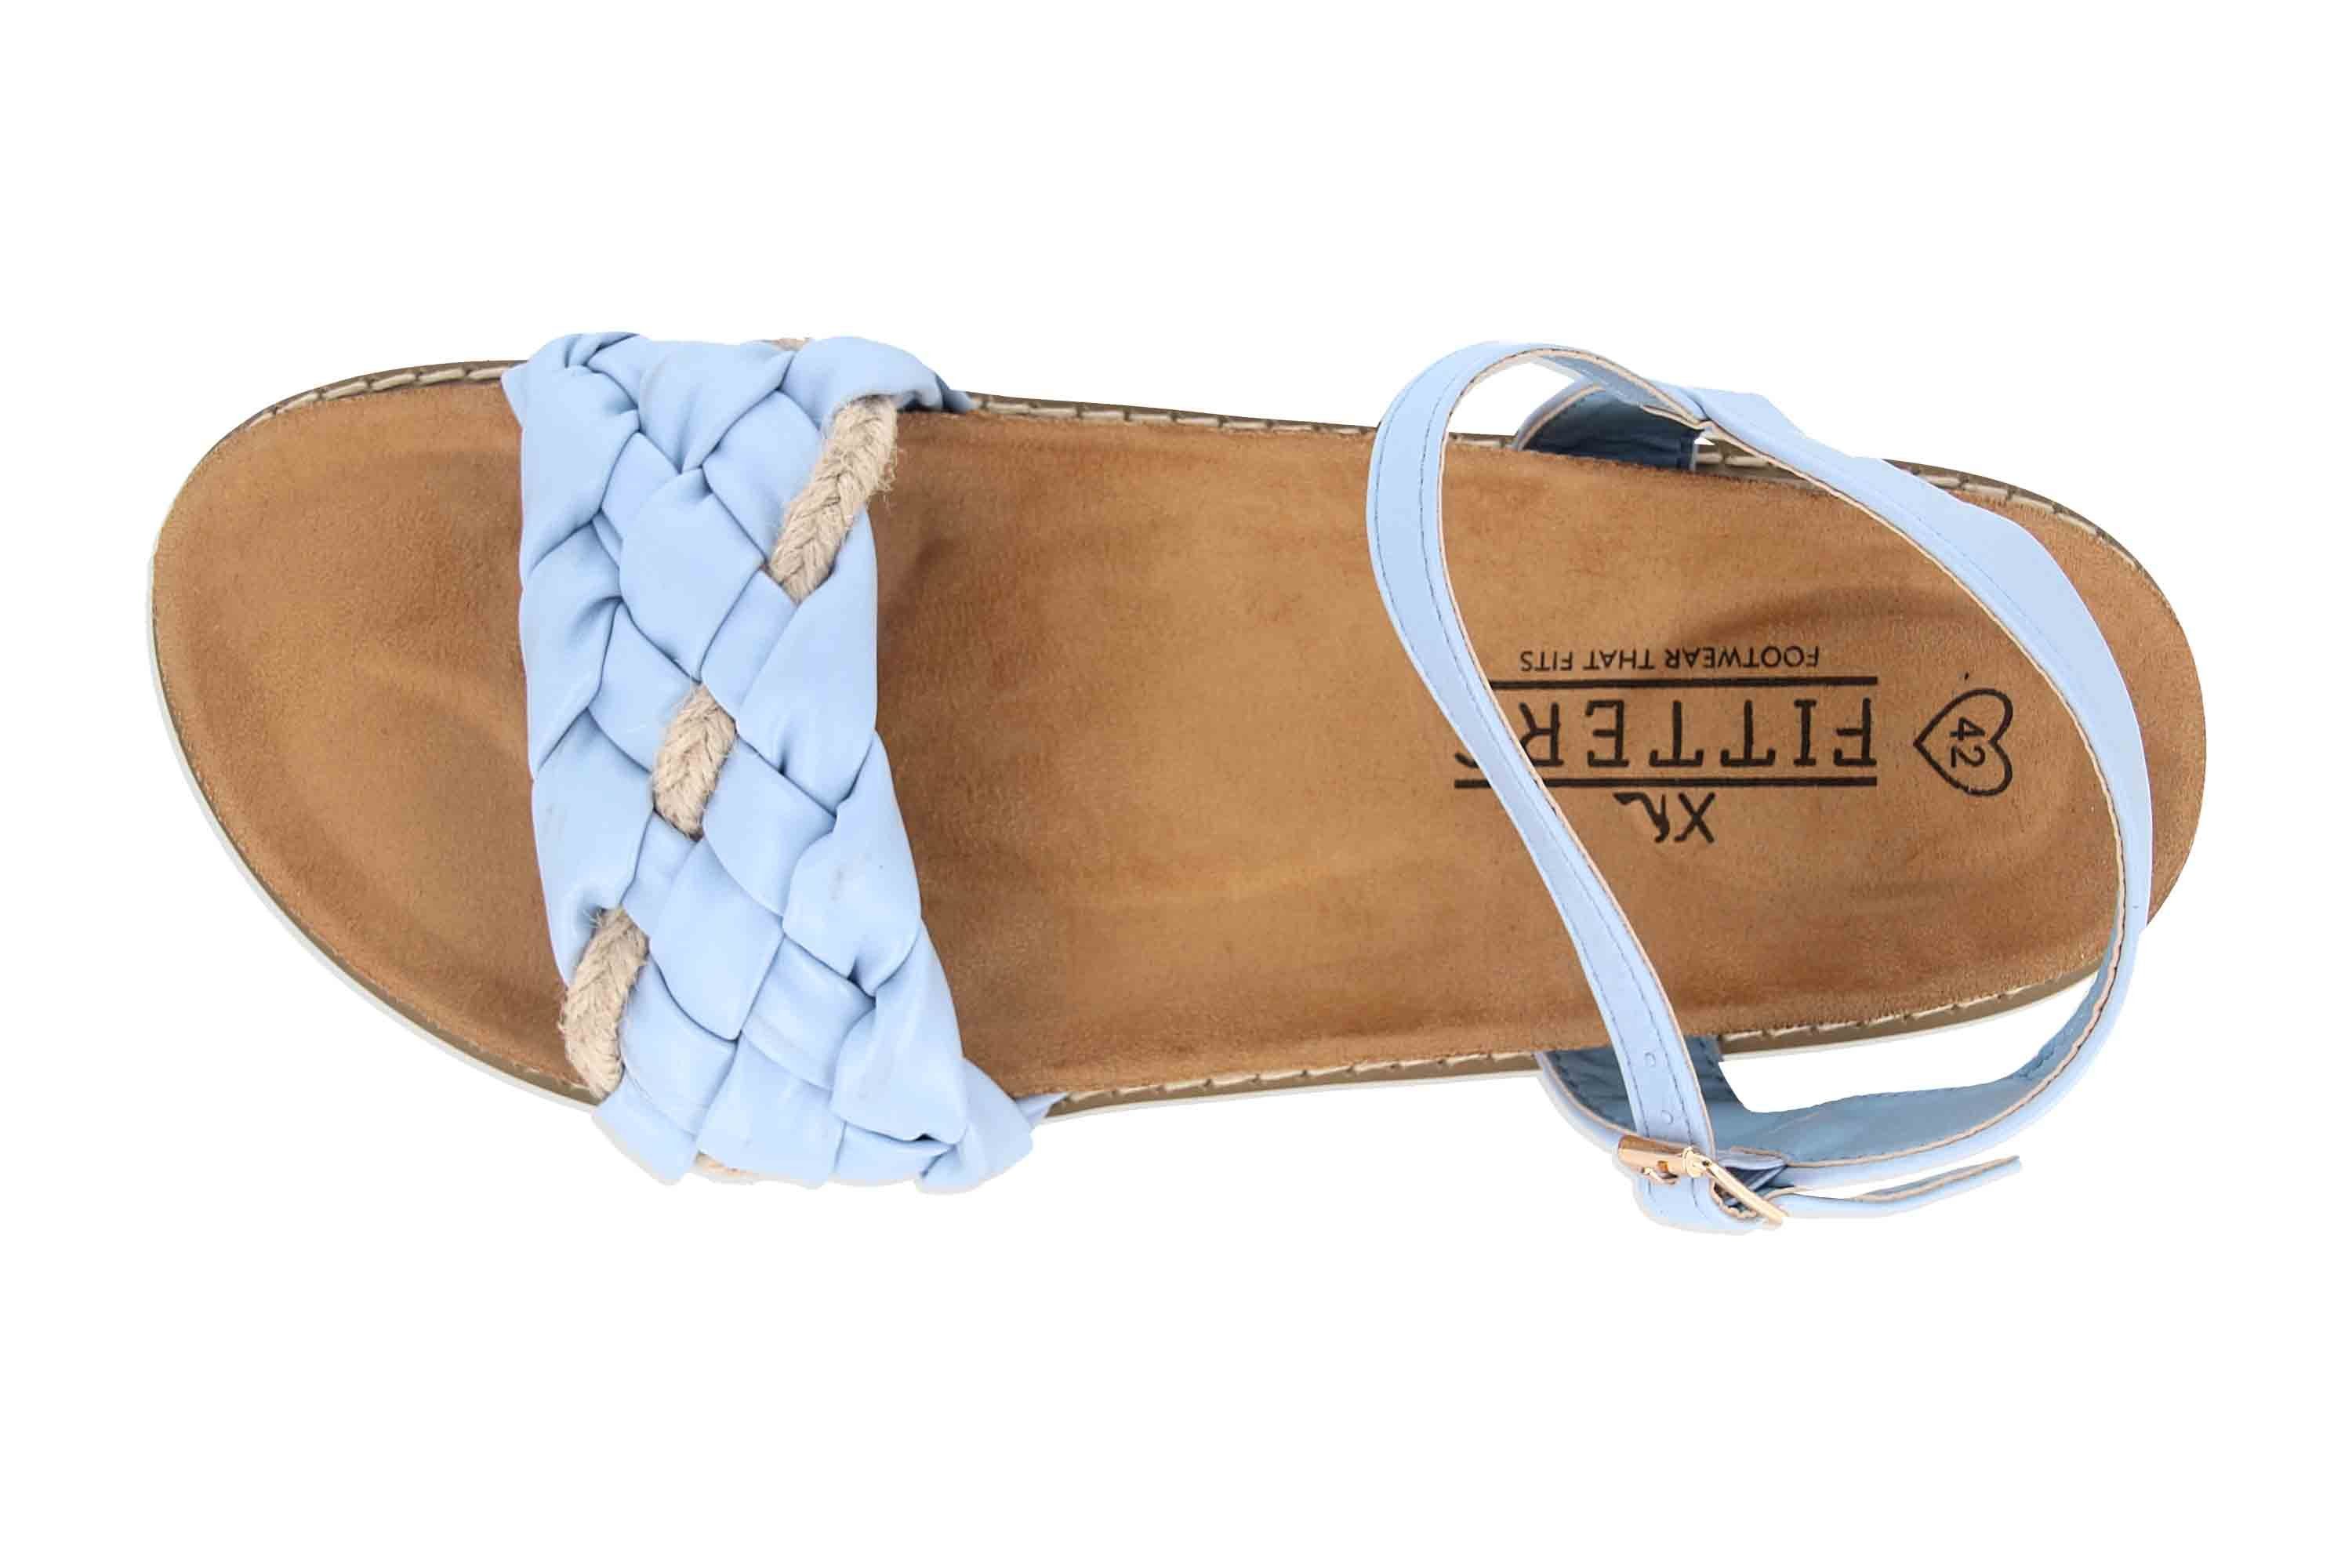 Jeanne 2TM12006 Blue Light Sandale Footwear Fitters